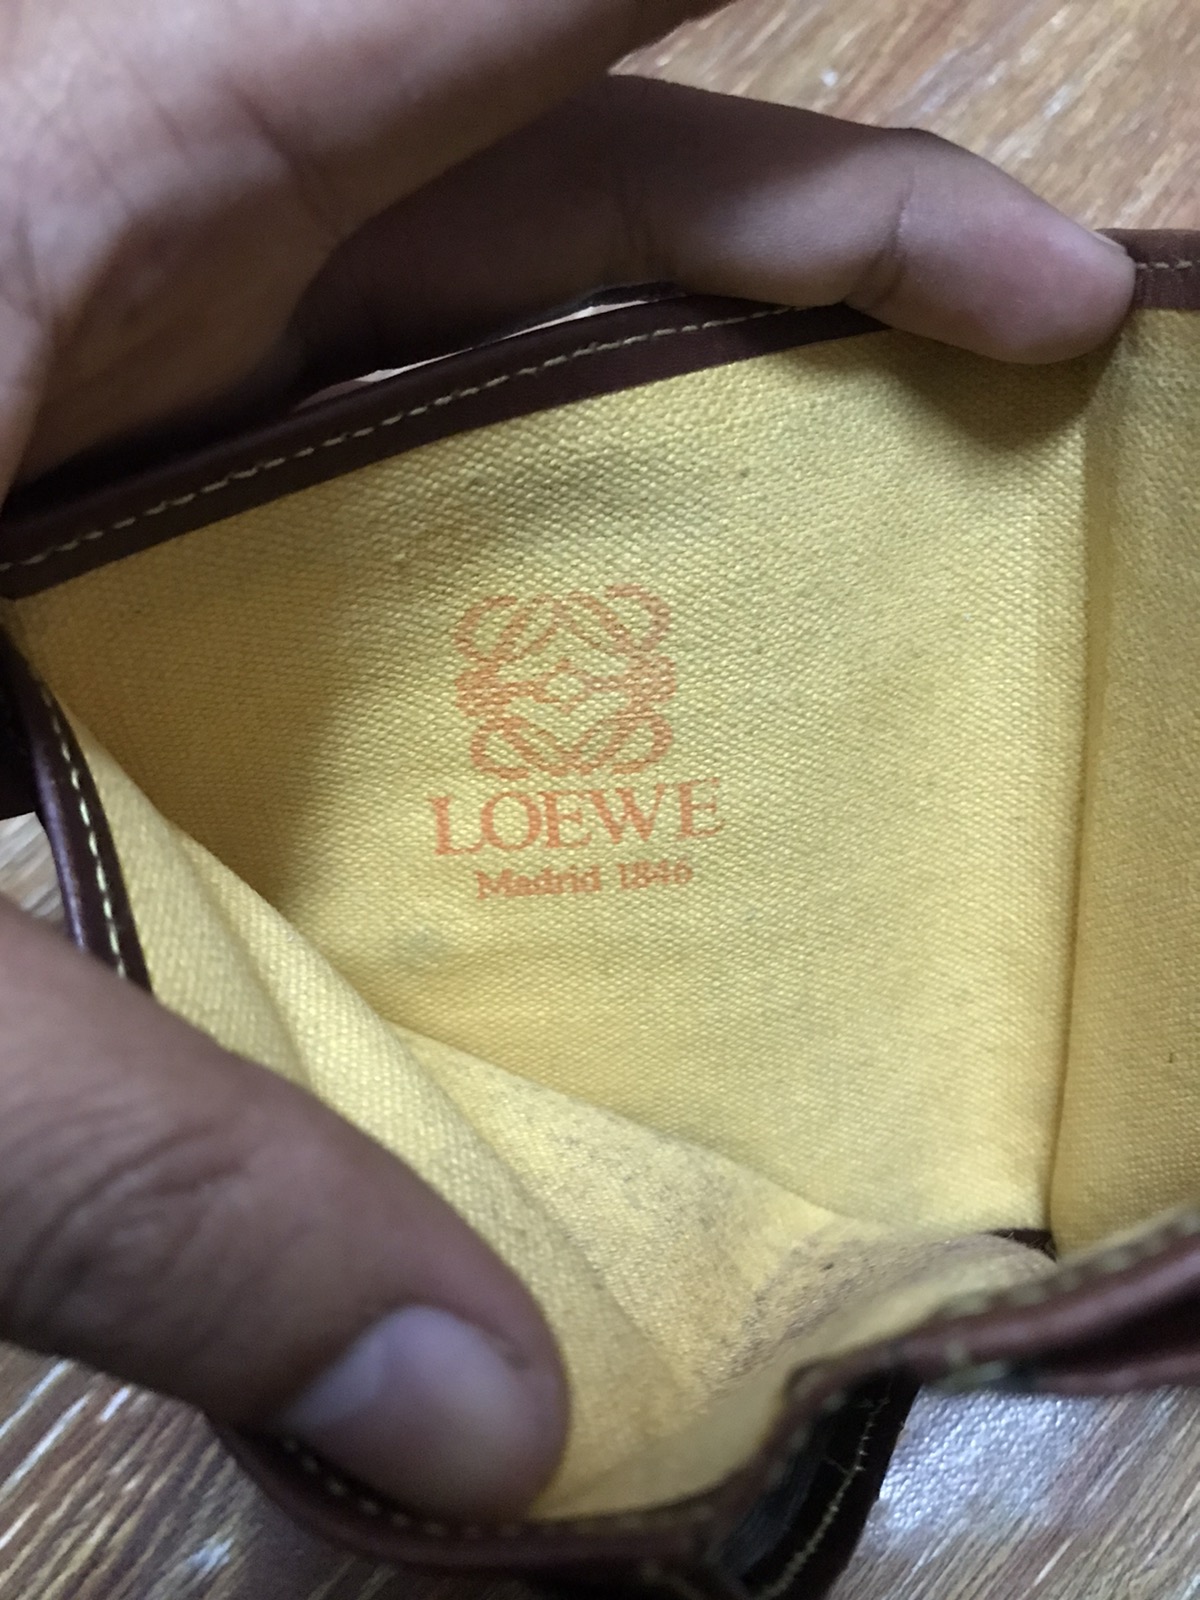 Vintage Loewe Wallet Made in Spain - 4